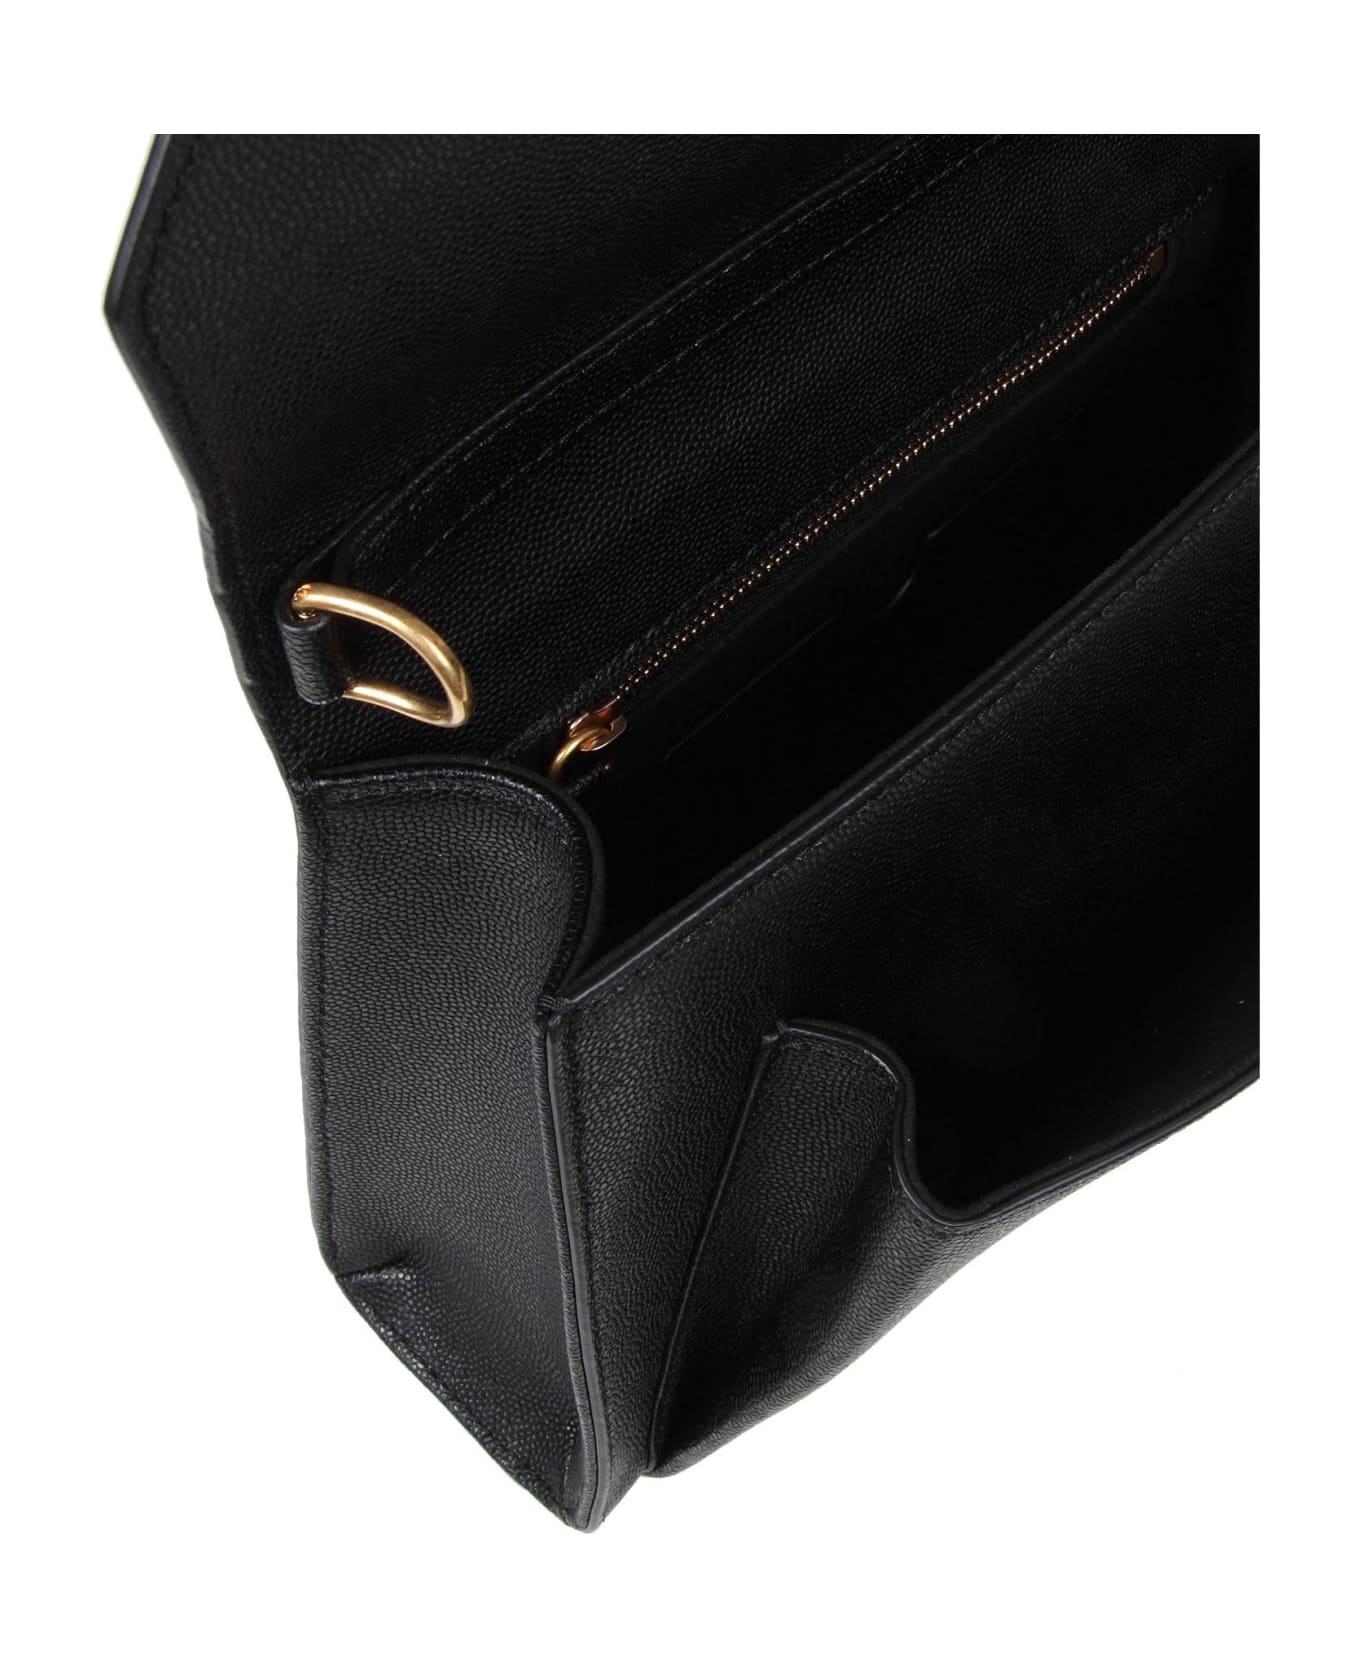 Balmain Emblem Bag In Calfskin With Decorative Buttons - Noir